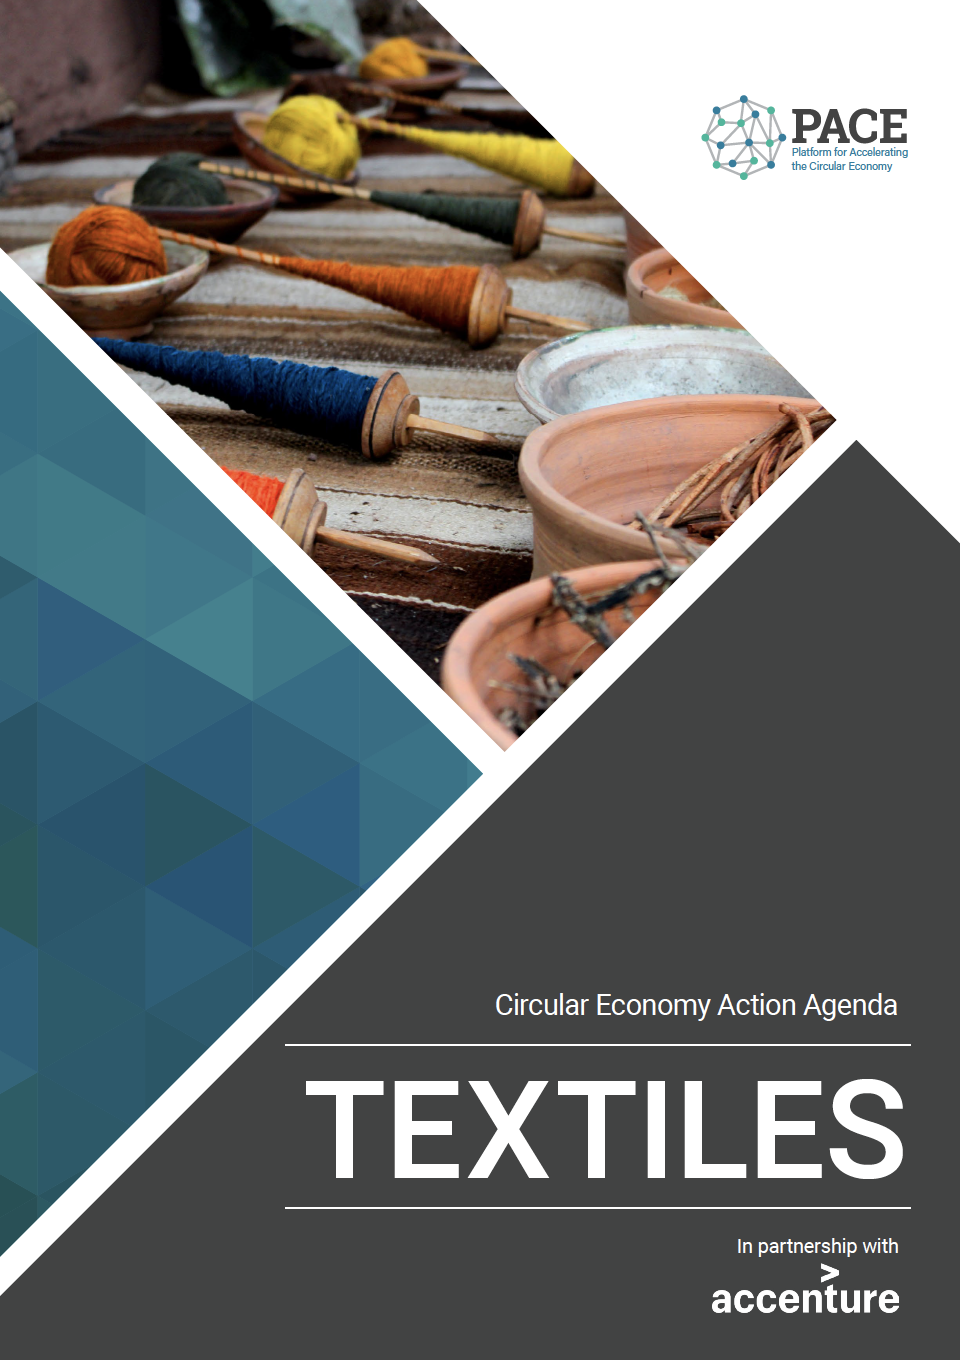 The Circular Economy Action Agenda for Textiles